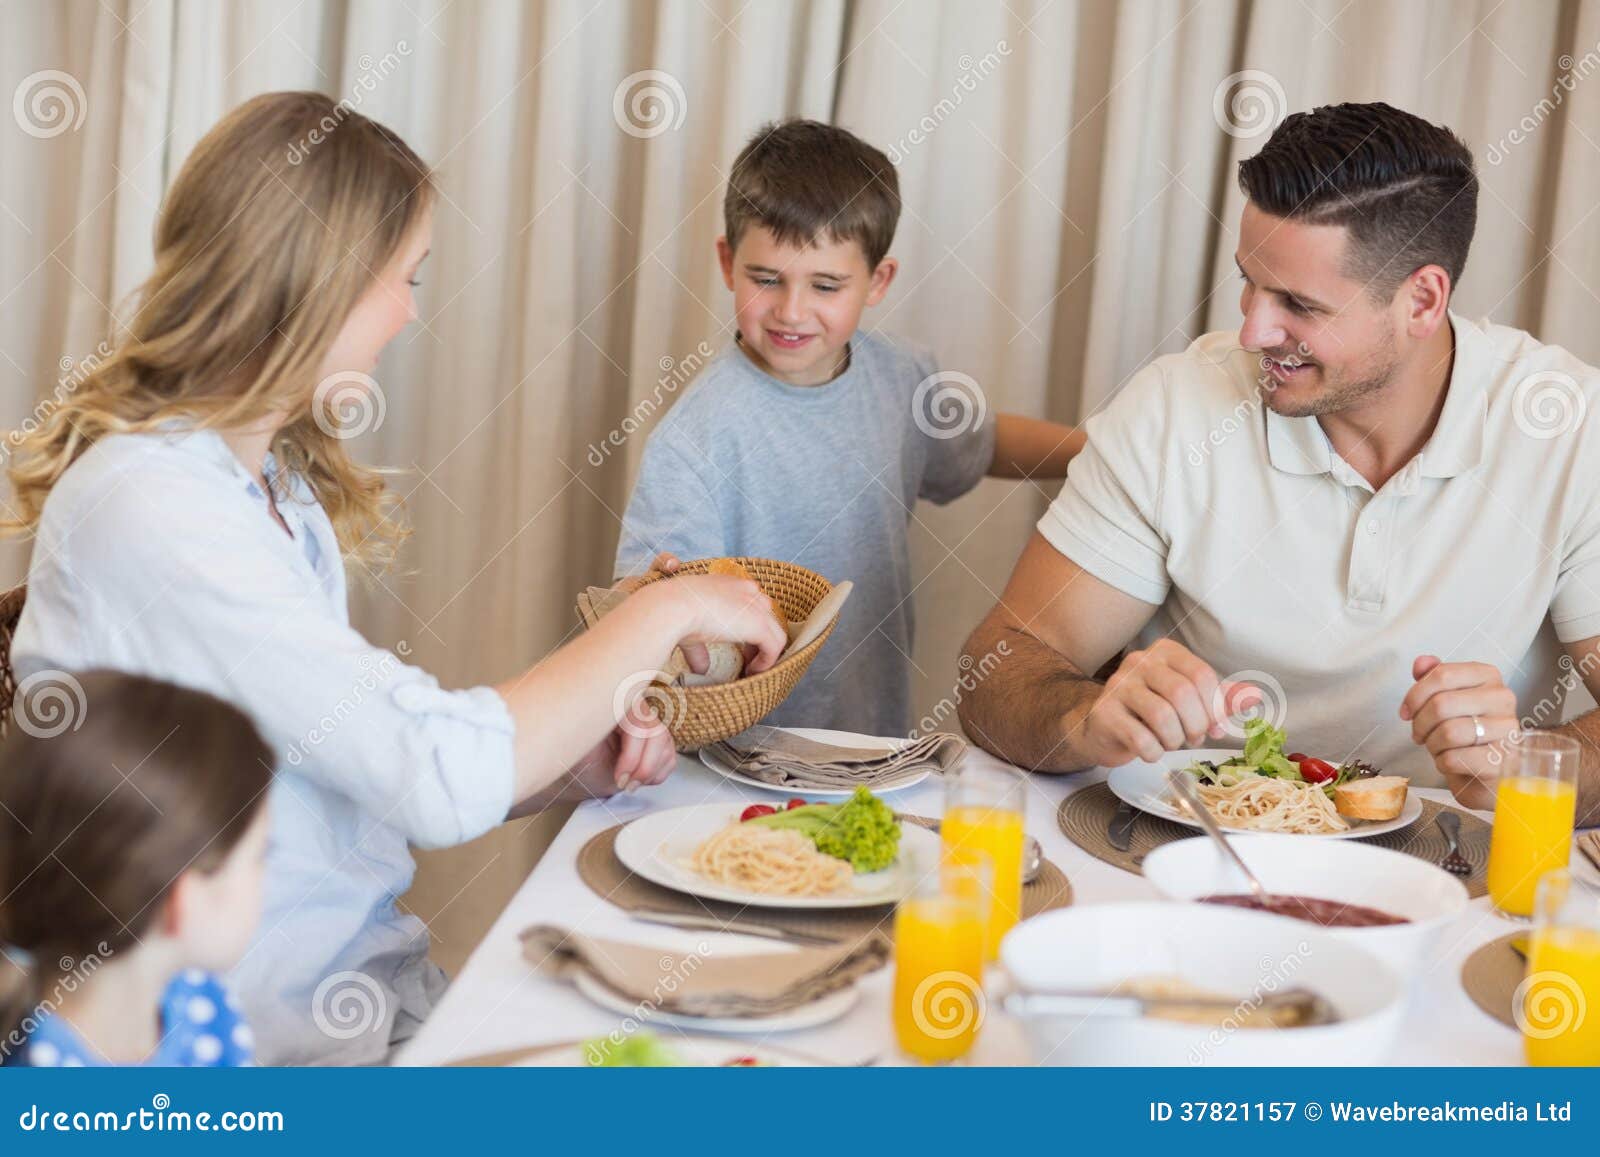 Садимся ужинать. Семья за столом. Семья за обеденным столом. Муж за обеденным столом. За обеденным столом.